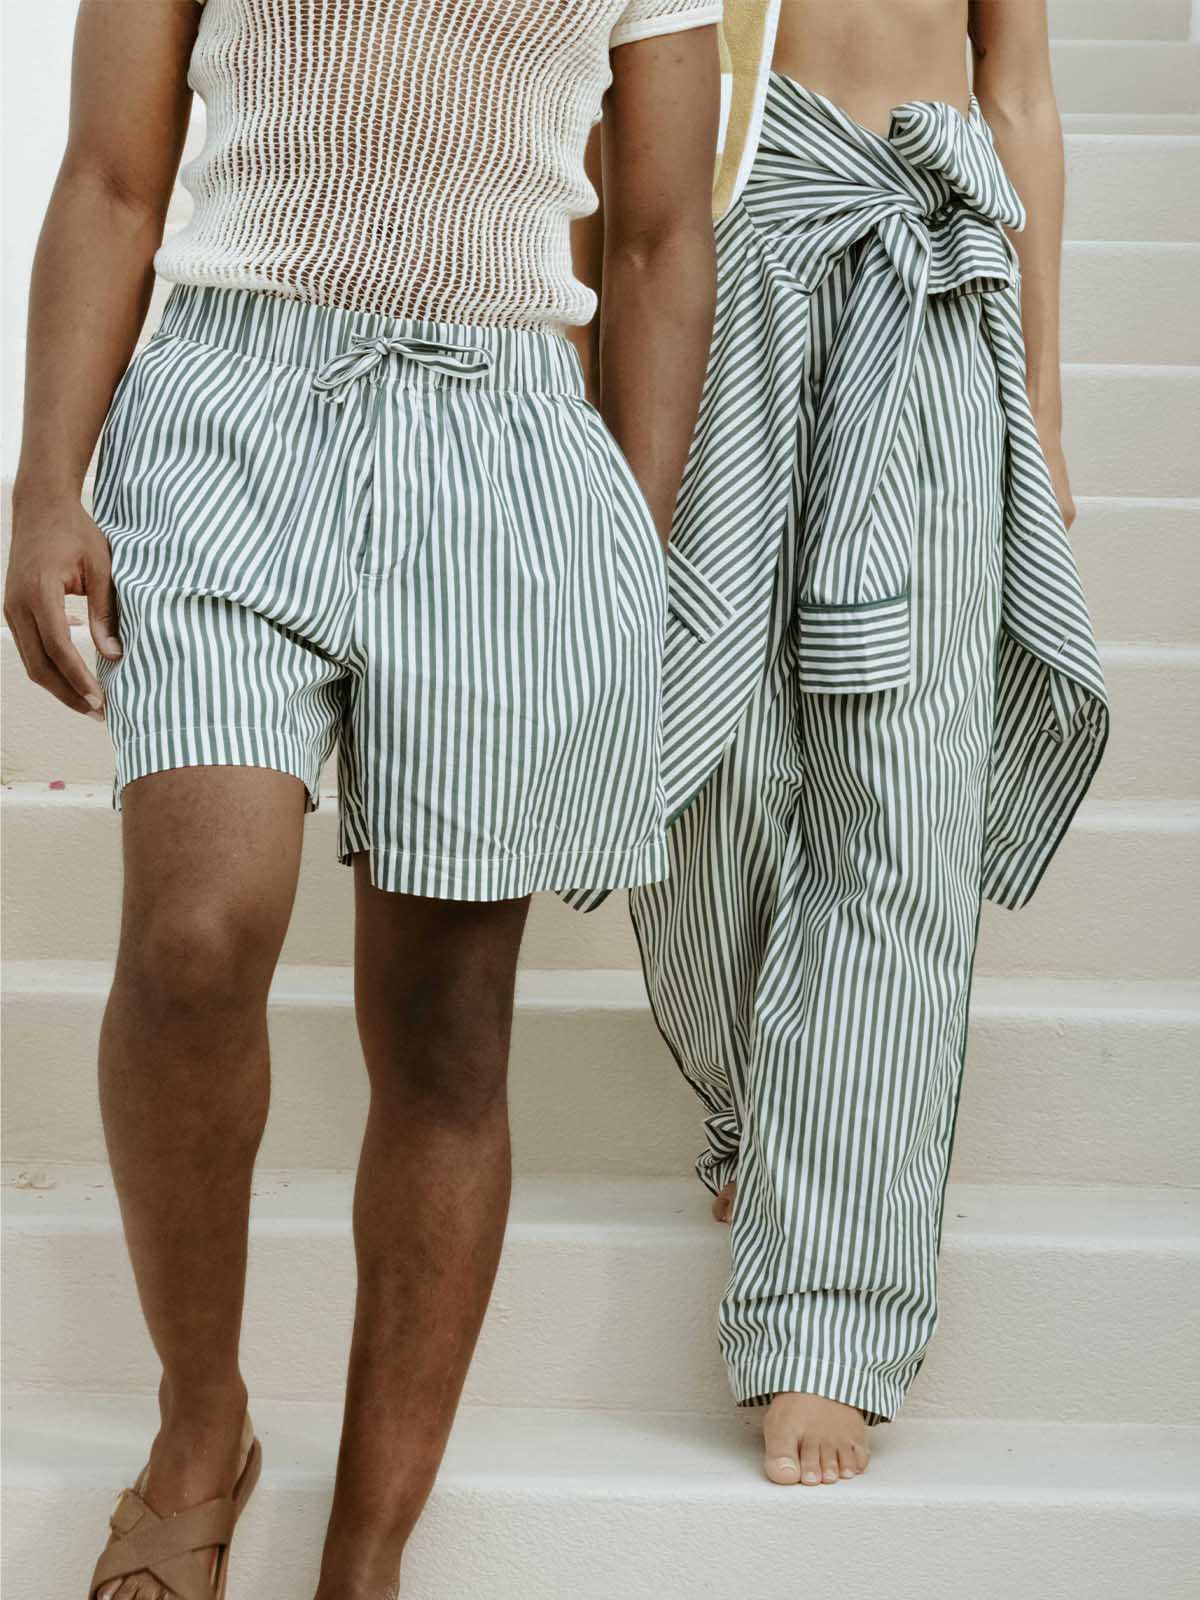 Tekla x PH Pajama Shorts